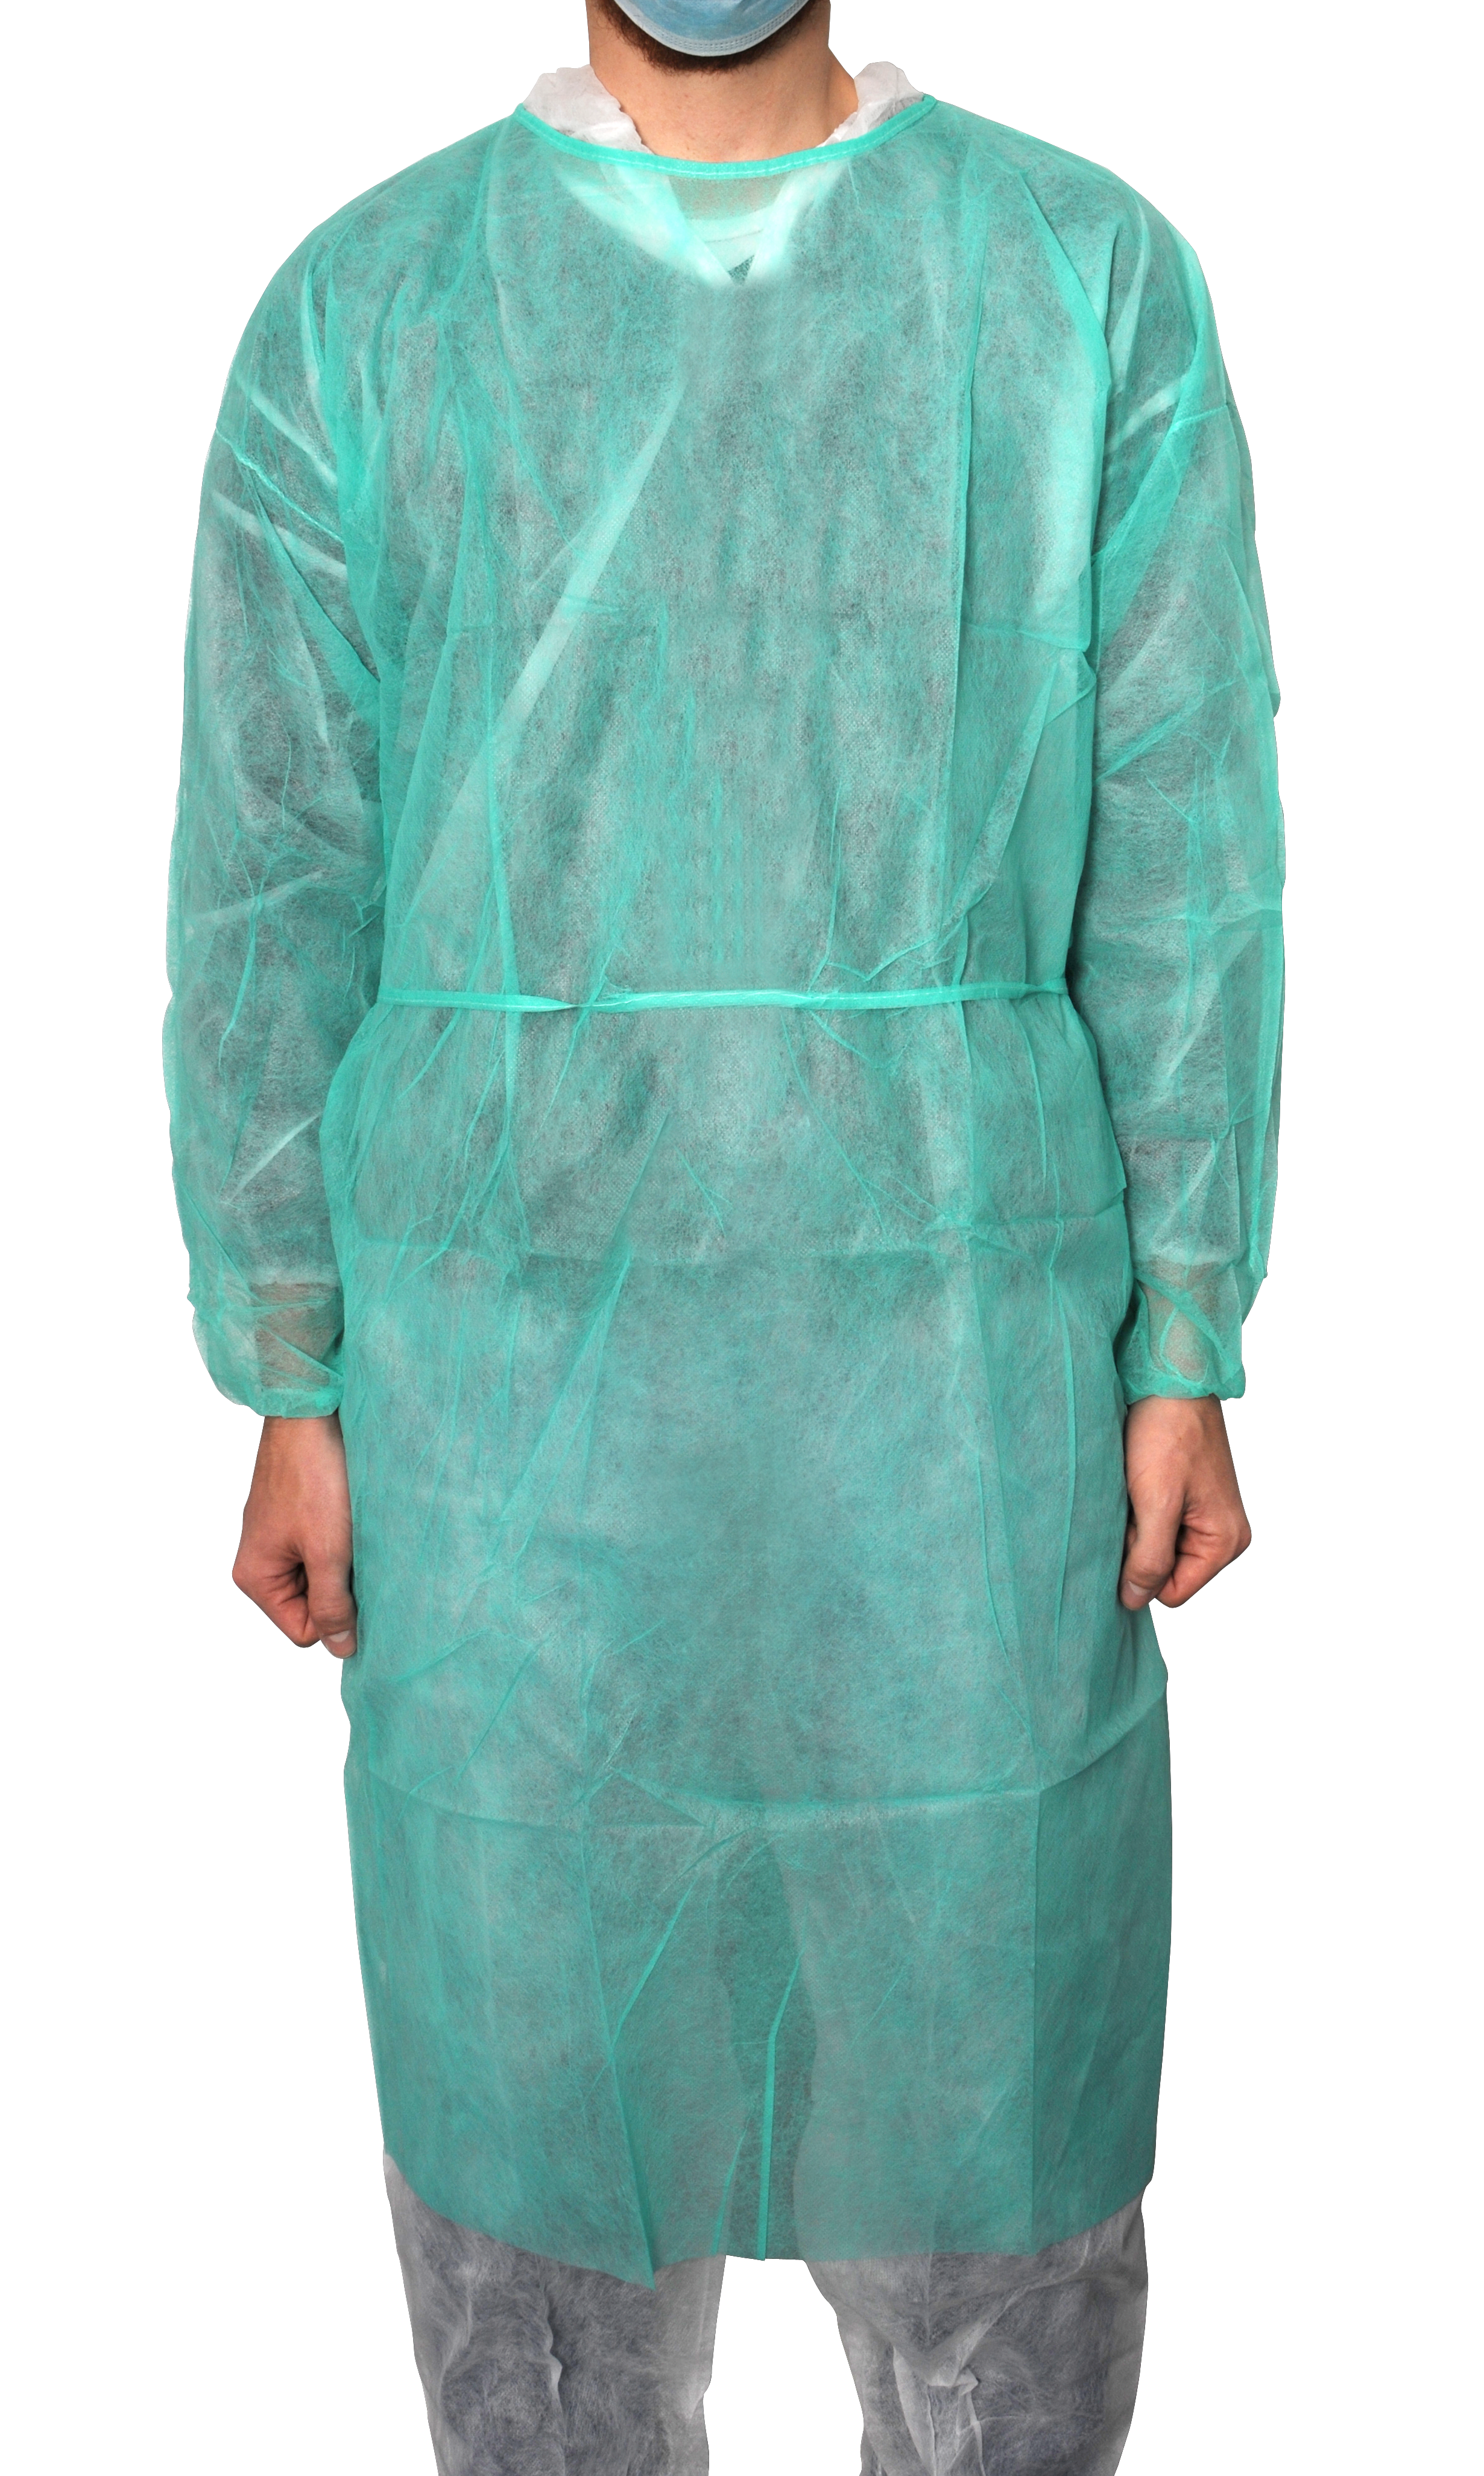 MaiMed - Coat Protect, Schutzkittel aus Polypropylen-Vliesstoff, grün, 120x140cm, 10 Stück/Beutel